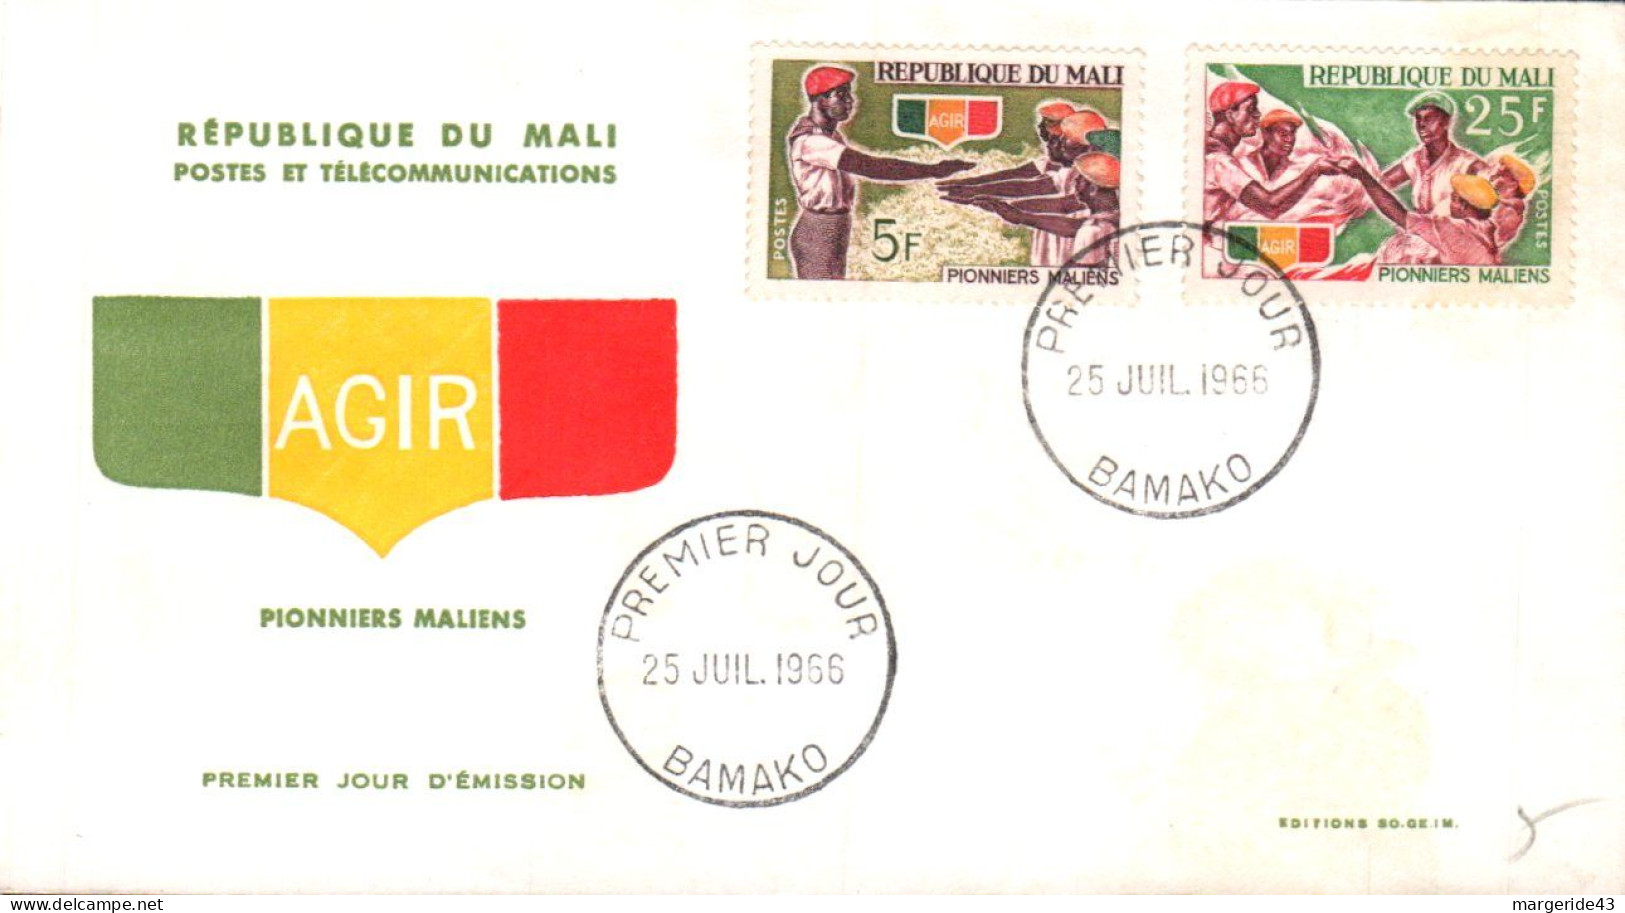 MALI FDC 1966 PIONNIERS MALIENS - Mali (1959-...)